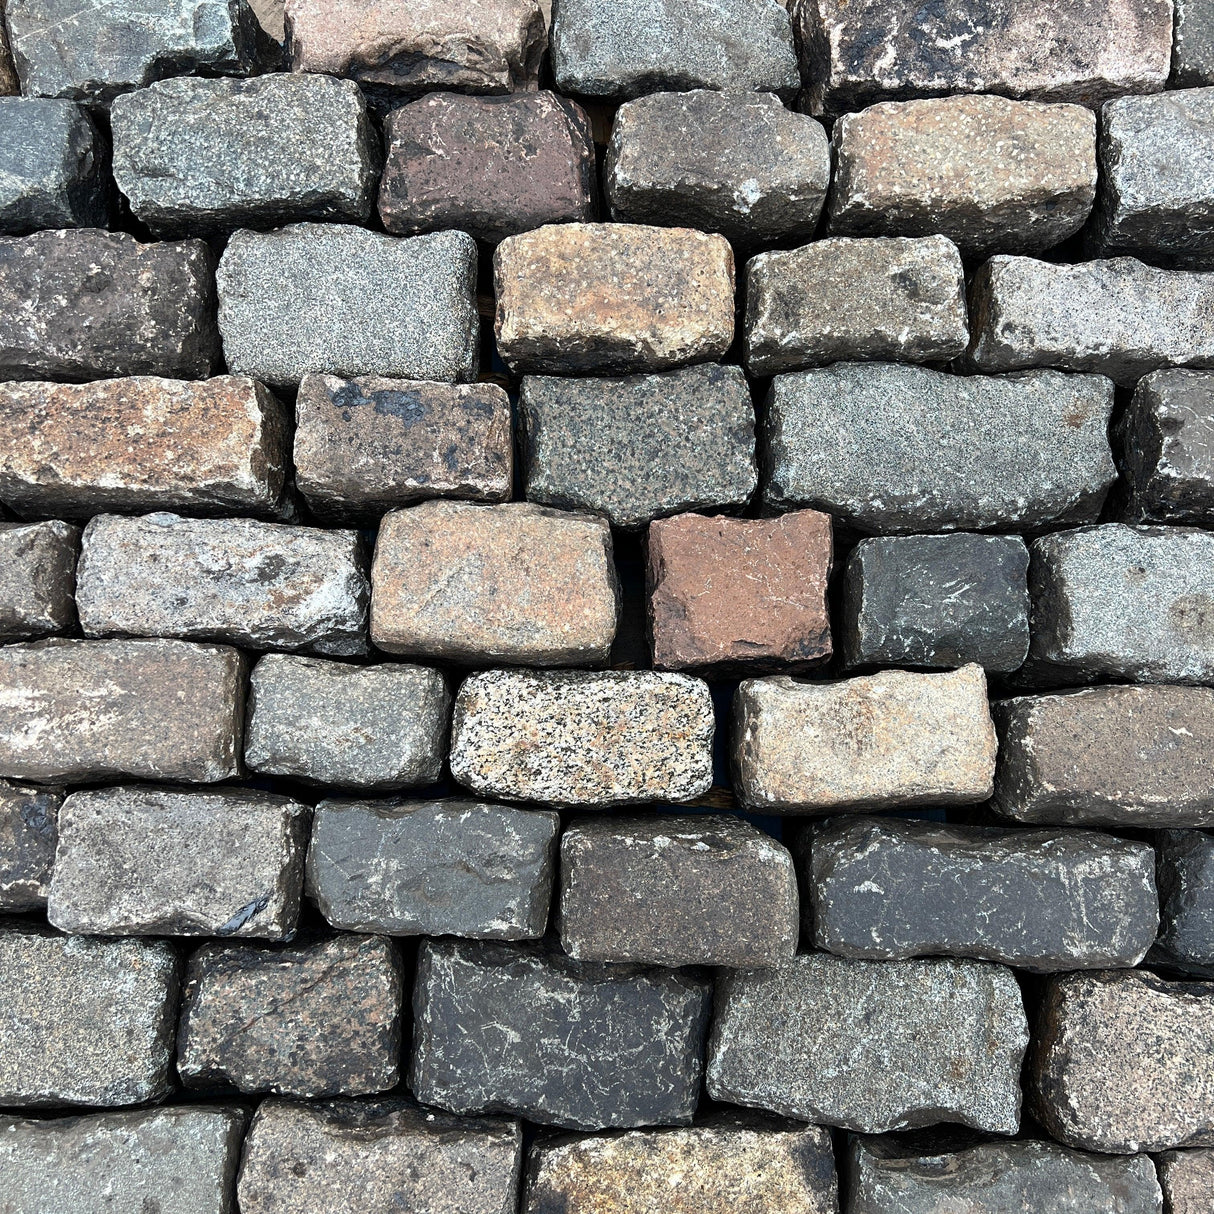 Reclaimed Mixed Granite Stone Cobble / Setts - Reclaimed Brick Company